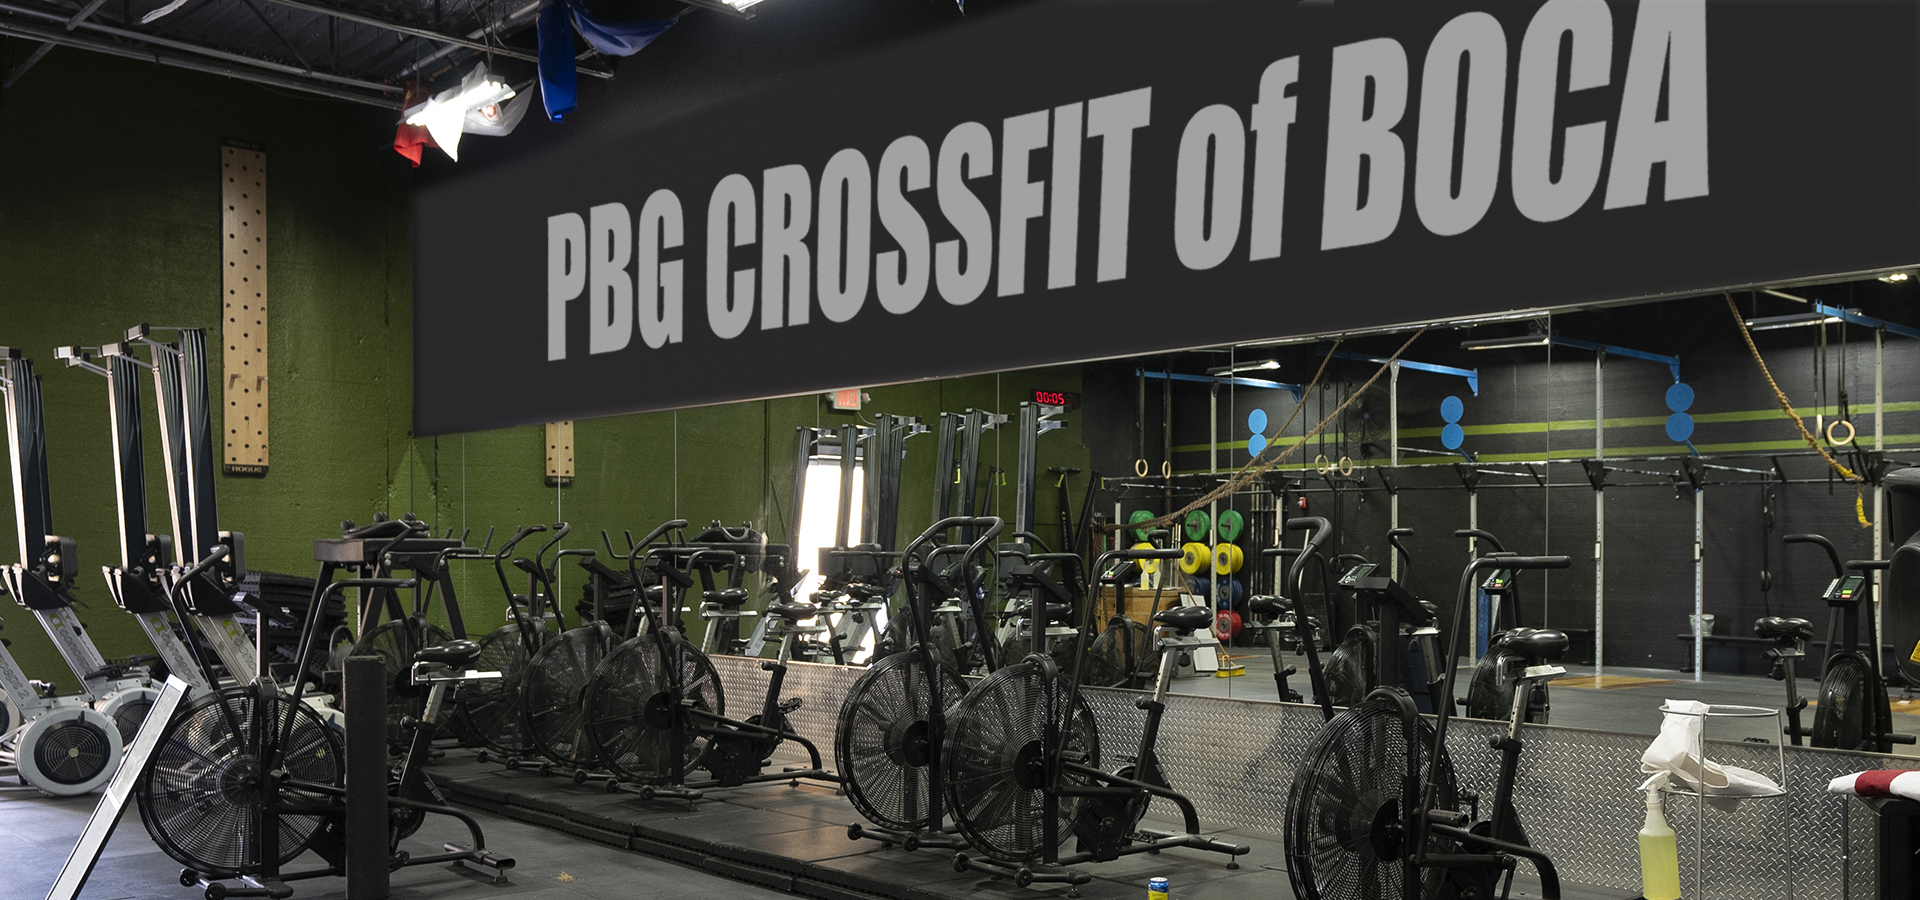 PBG CrossFit of Boca Raton